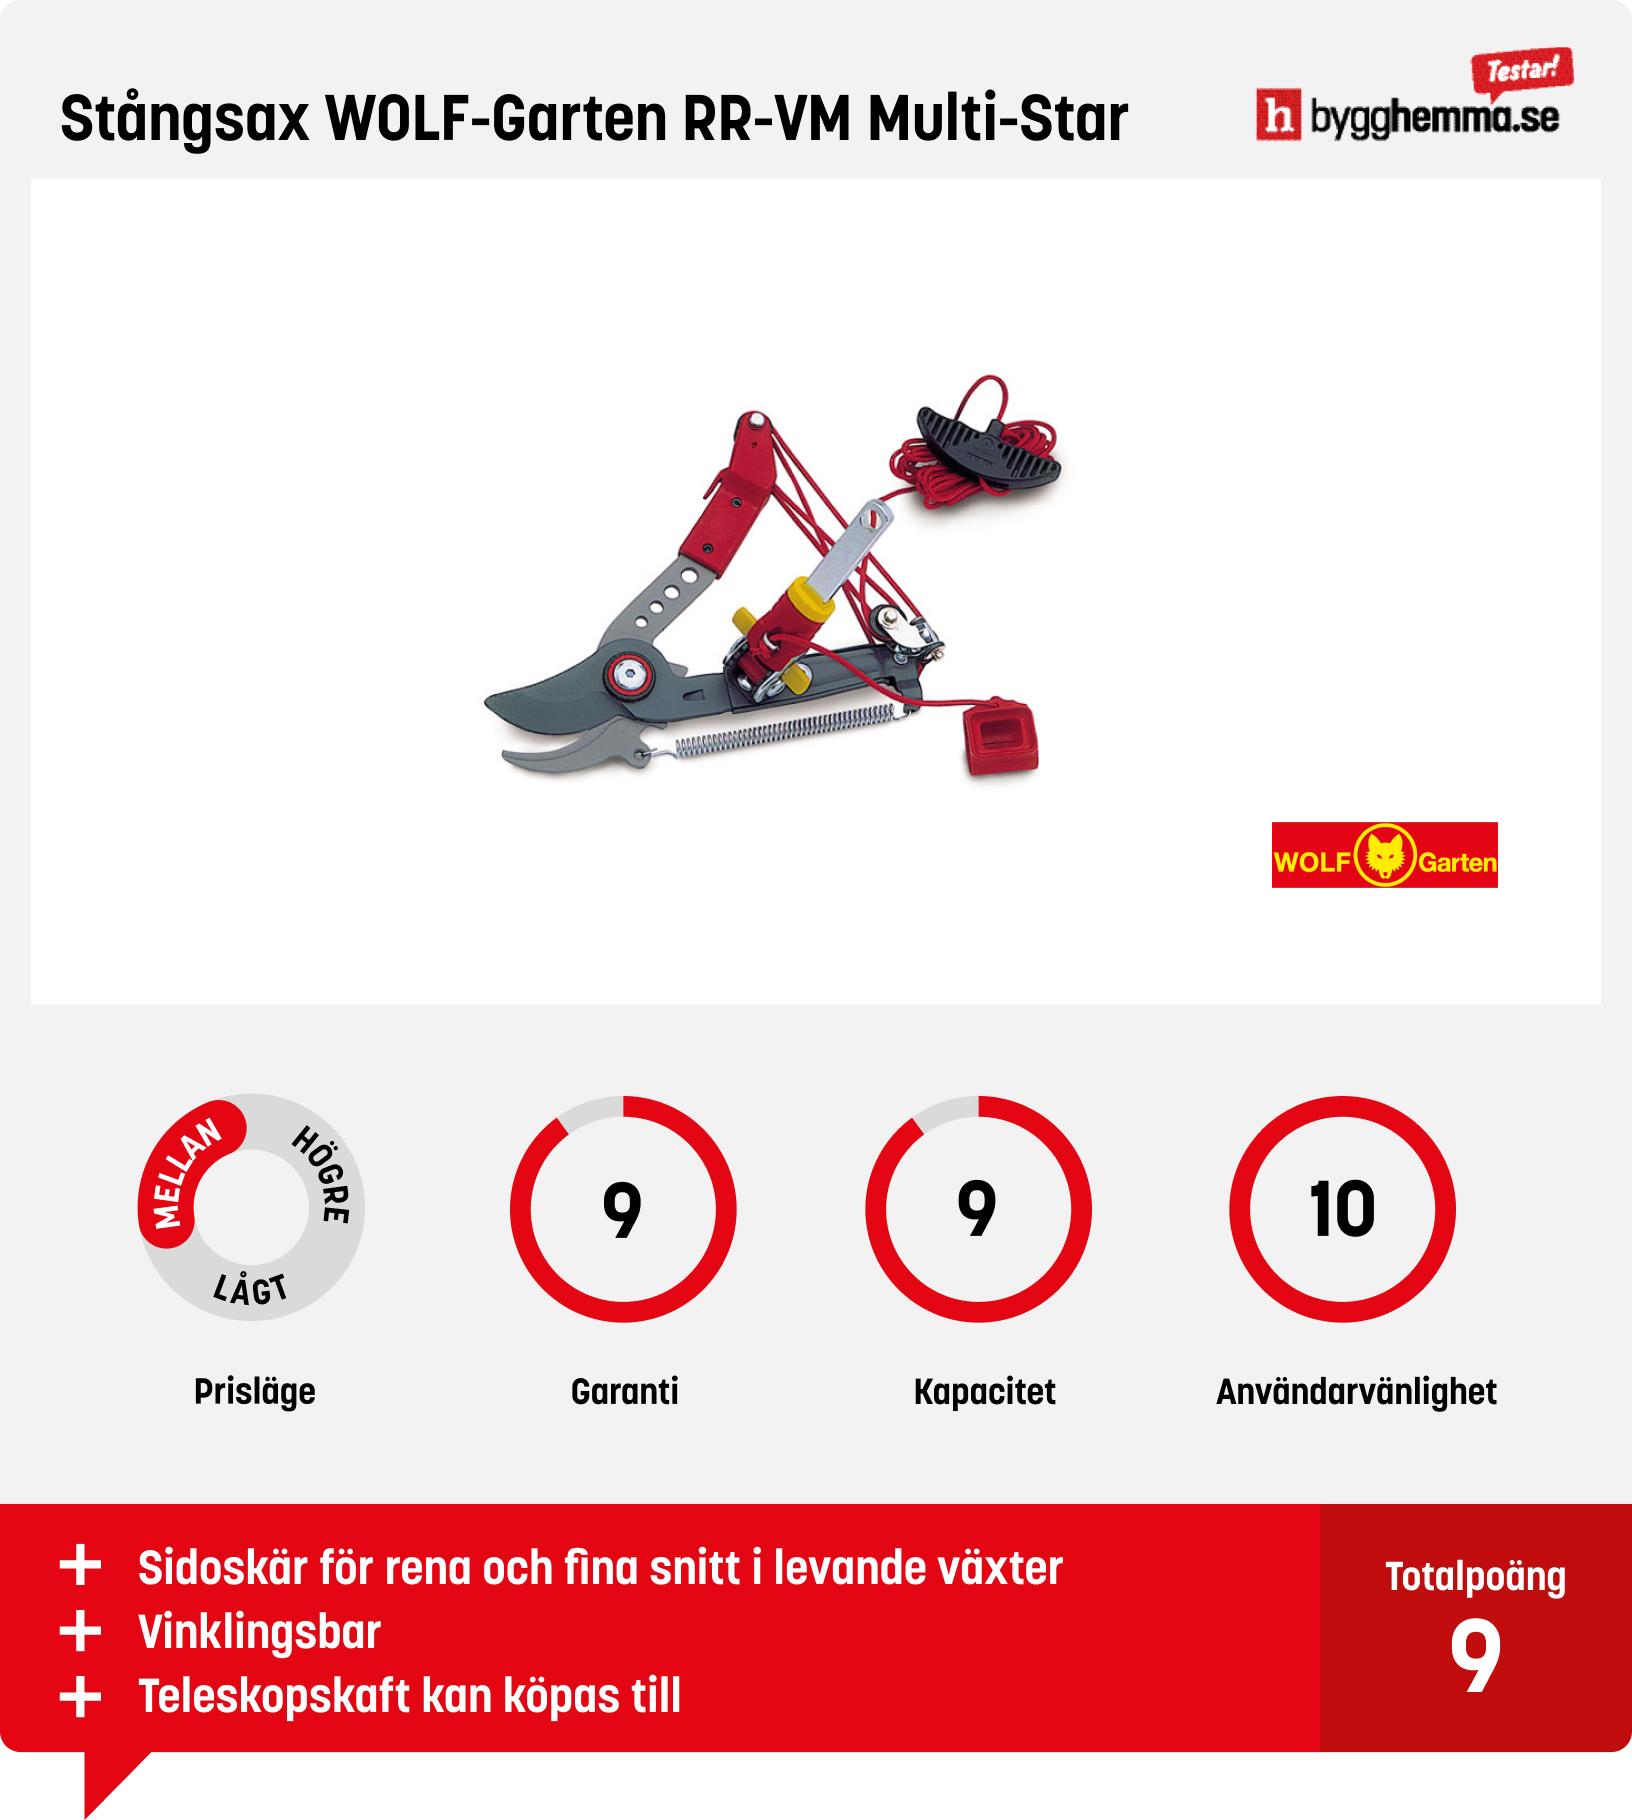 Stångsax test - Stångsax WOLF-Garten RR-VM Multi-Star